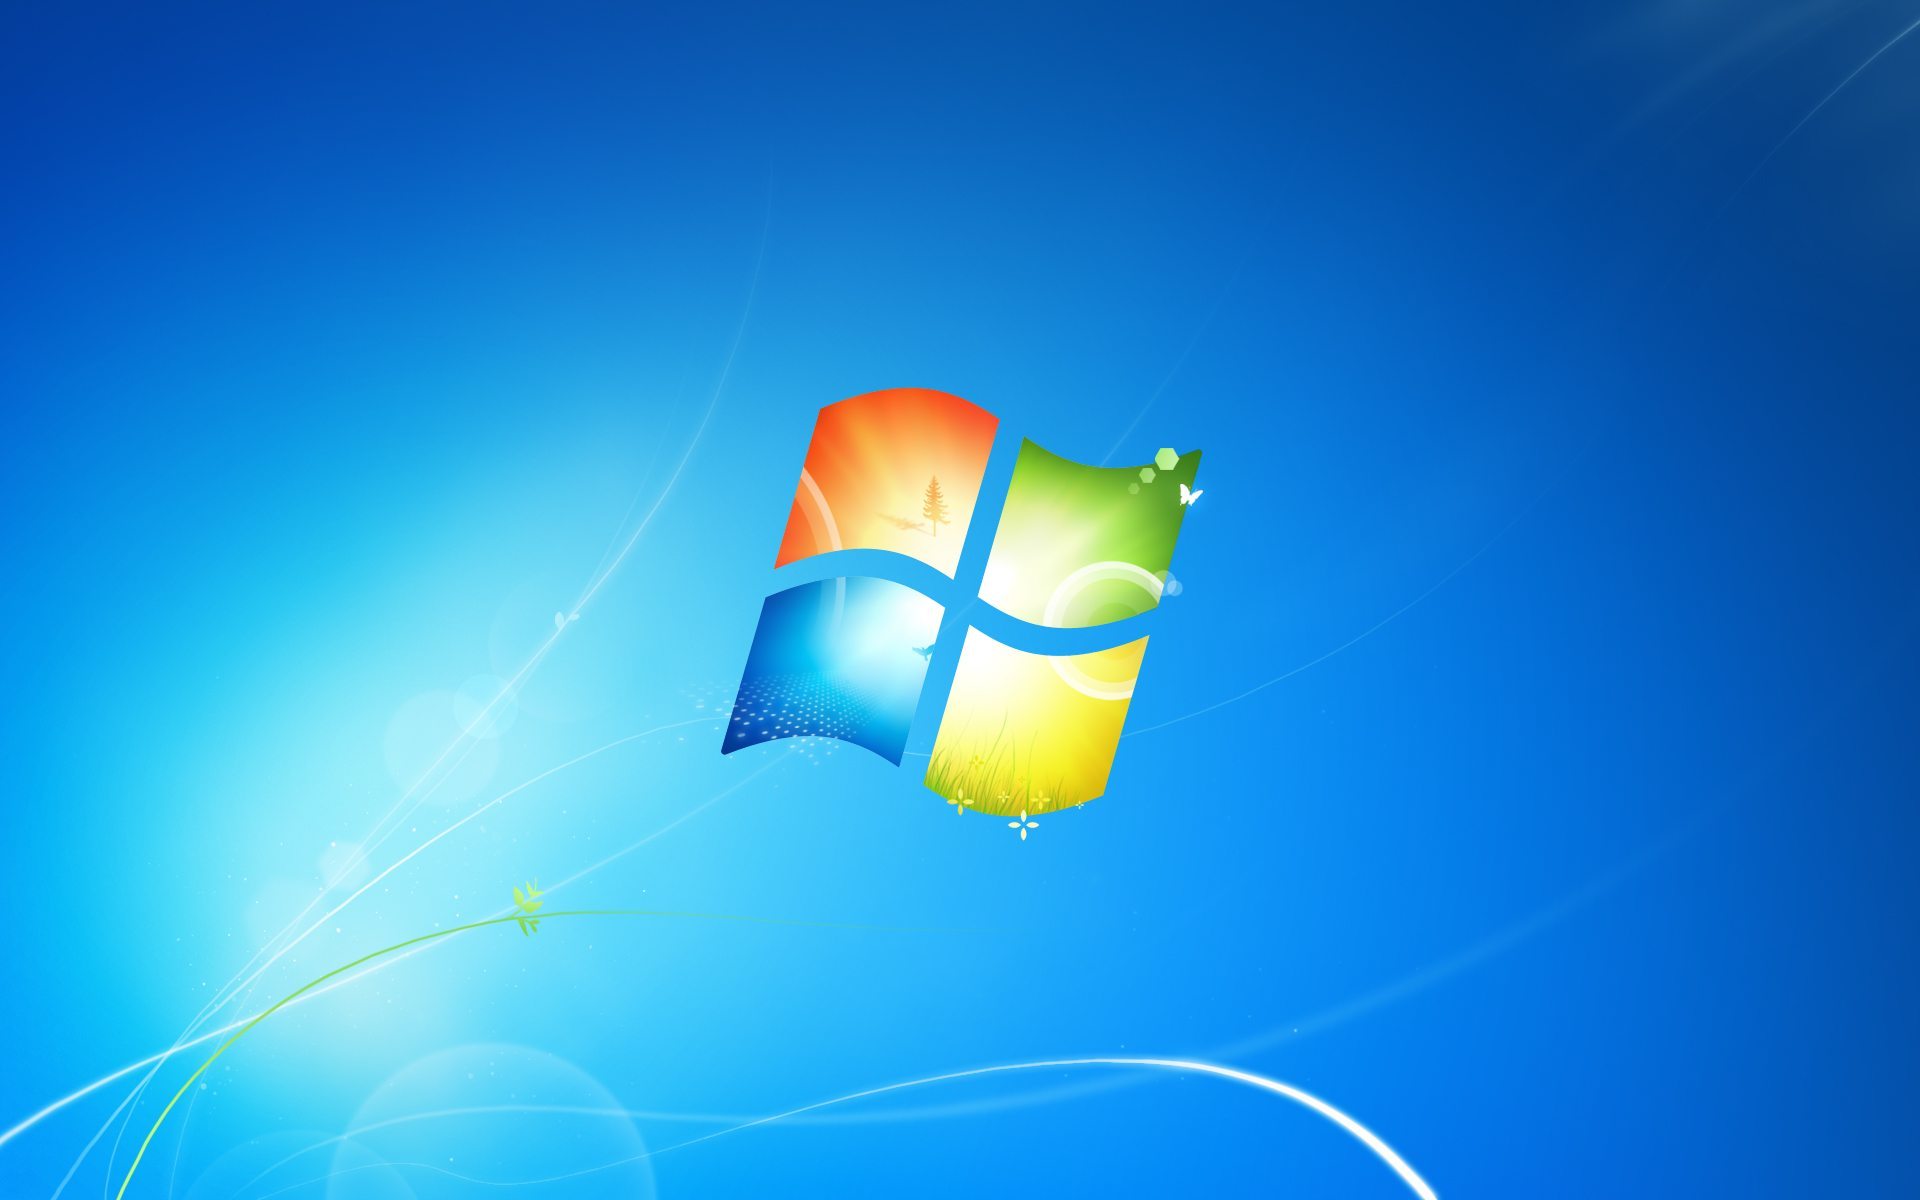 Chúng ta đã cùng nhau trải qua rất nhiều kỷ niệm đáng nhớ trên Windows 7 và 8, nhưng giờ đây là lúc chúng ta phải nói lời tạm biệt. Hỗ trợ cho hai hệ điều hành này đã chính thức kết thúc hoàn toàn vào tháng 1, vì vậy cập nhật hình nền, chủ đề và các tính năng mới trên Windows 10 là điều cần thiết để bảo vệ an toàn và hiệu quả cho máy tính của bạn.